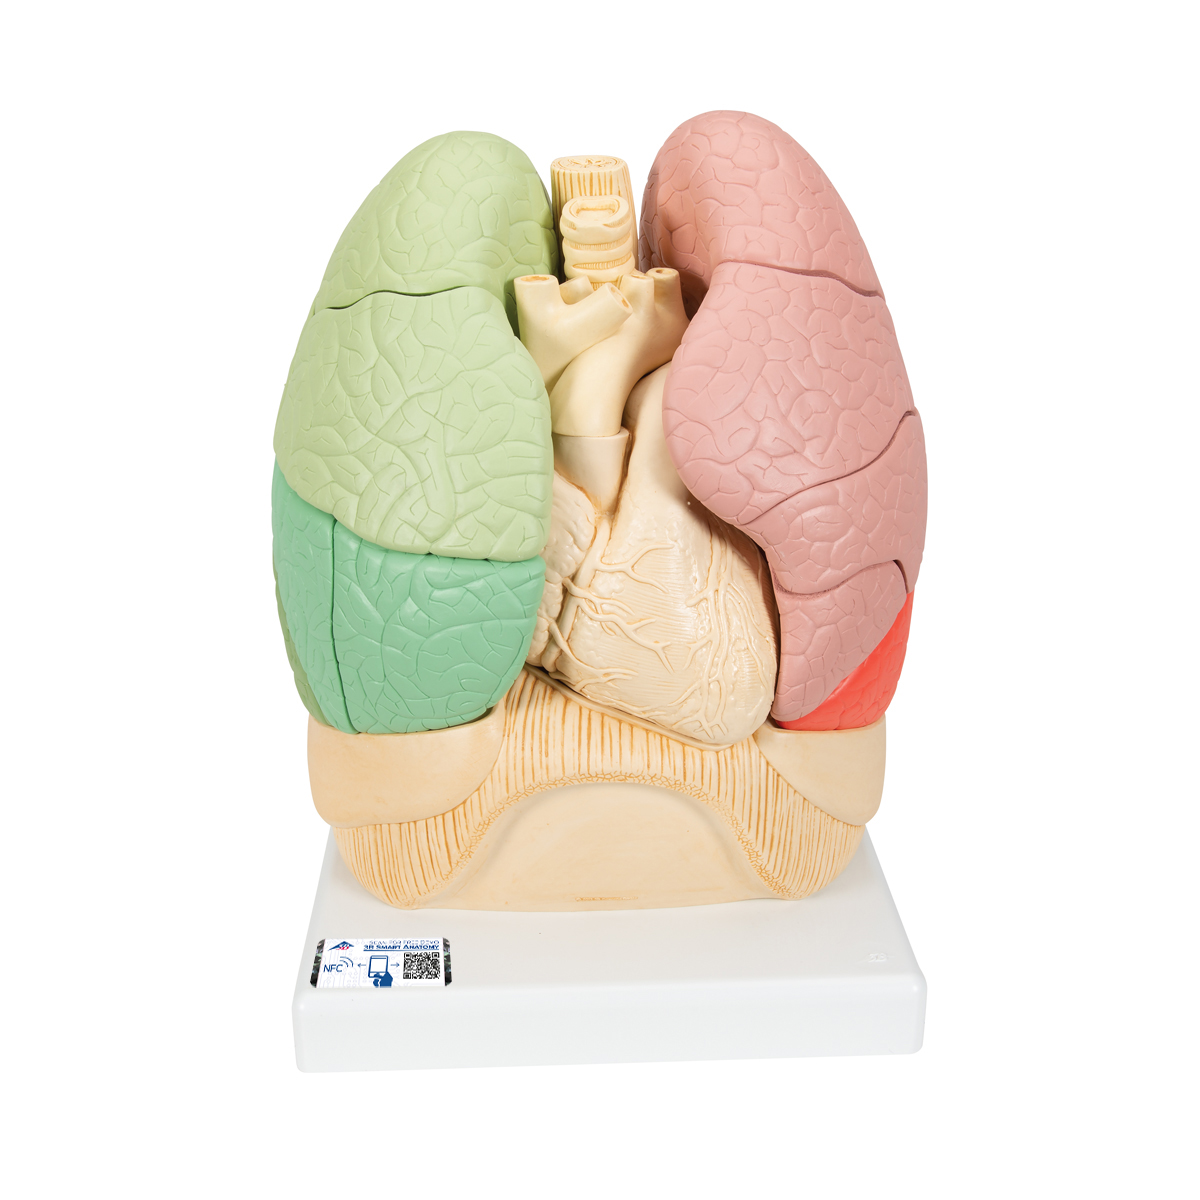 Segmentiertes Lungenmodell - 3B Smart Anatomy, Bestellnummer 1008494, G70, 3B Scientific